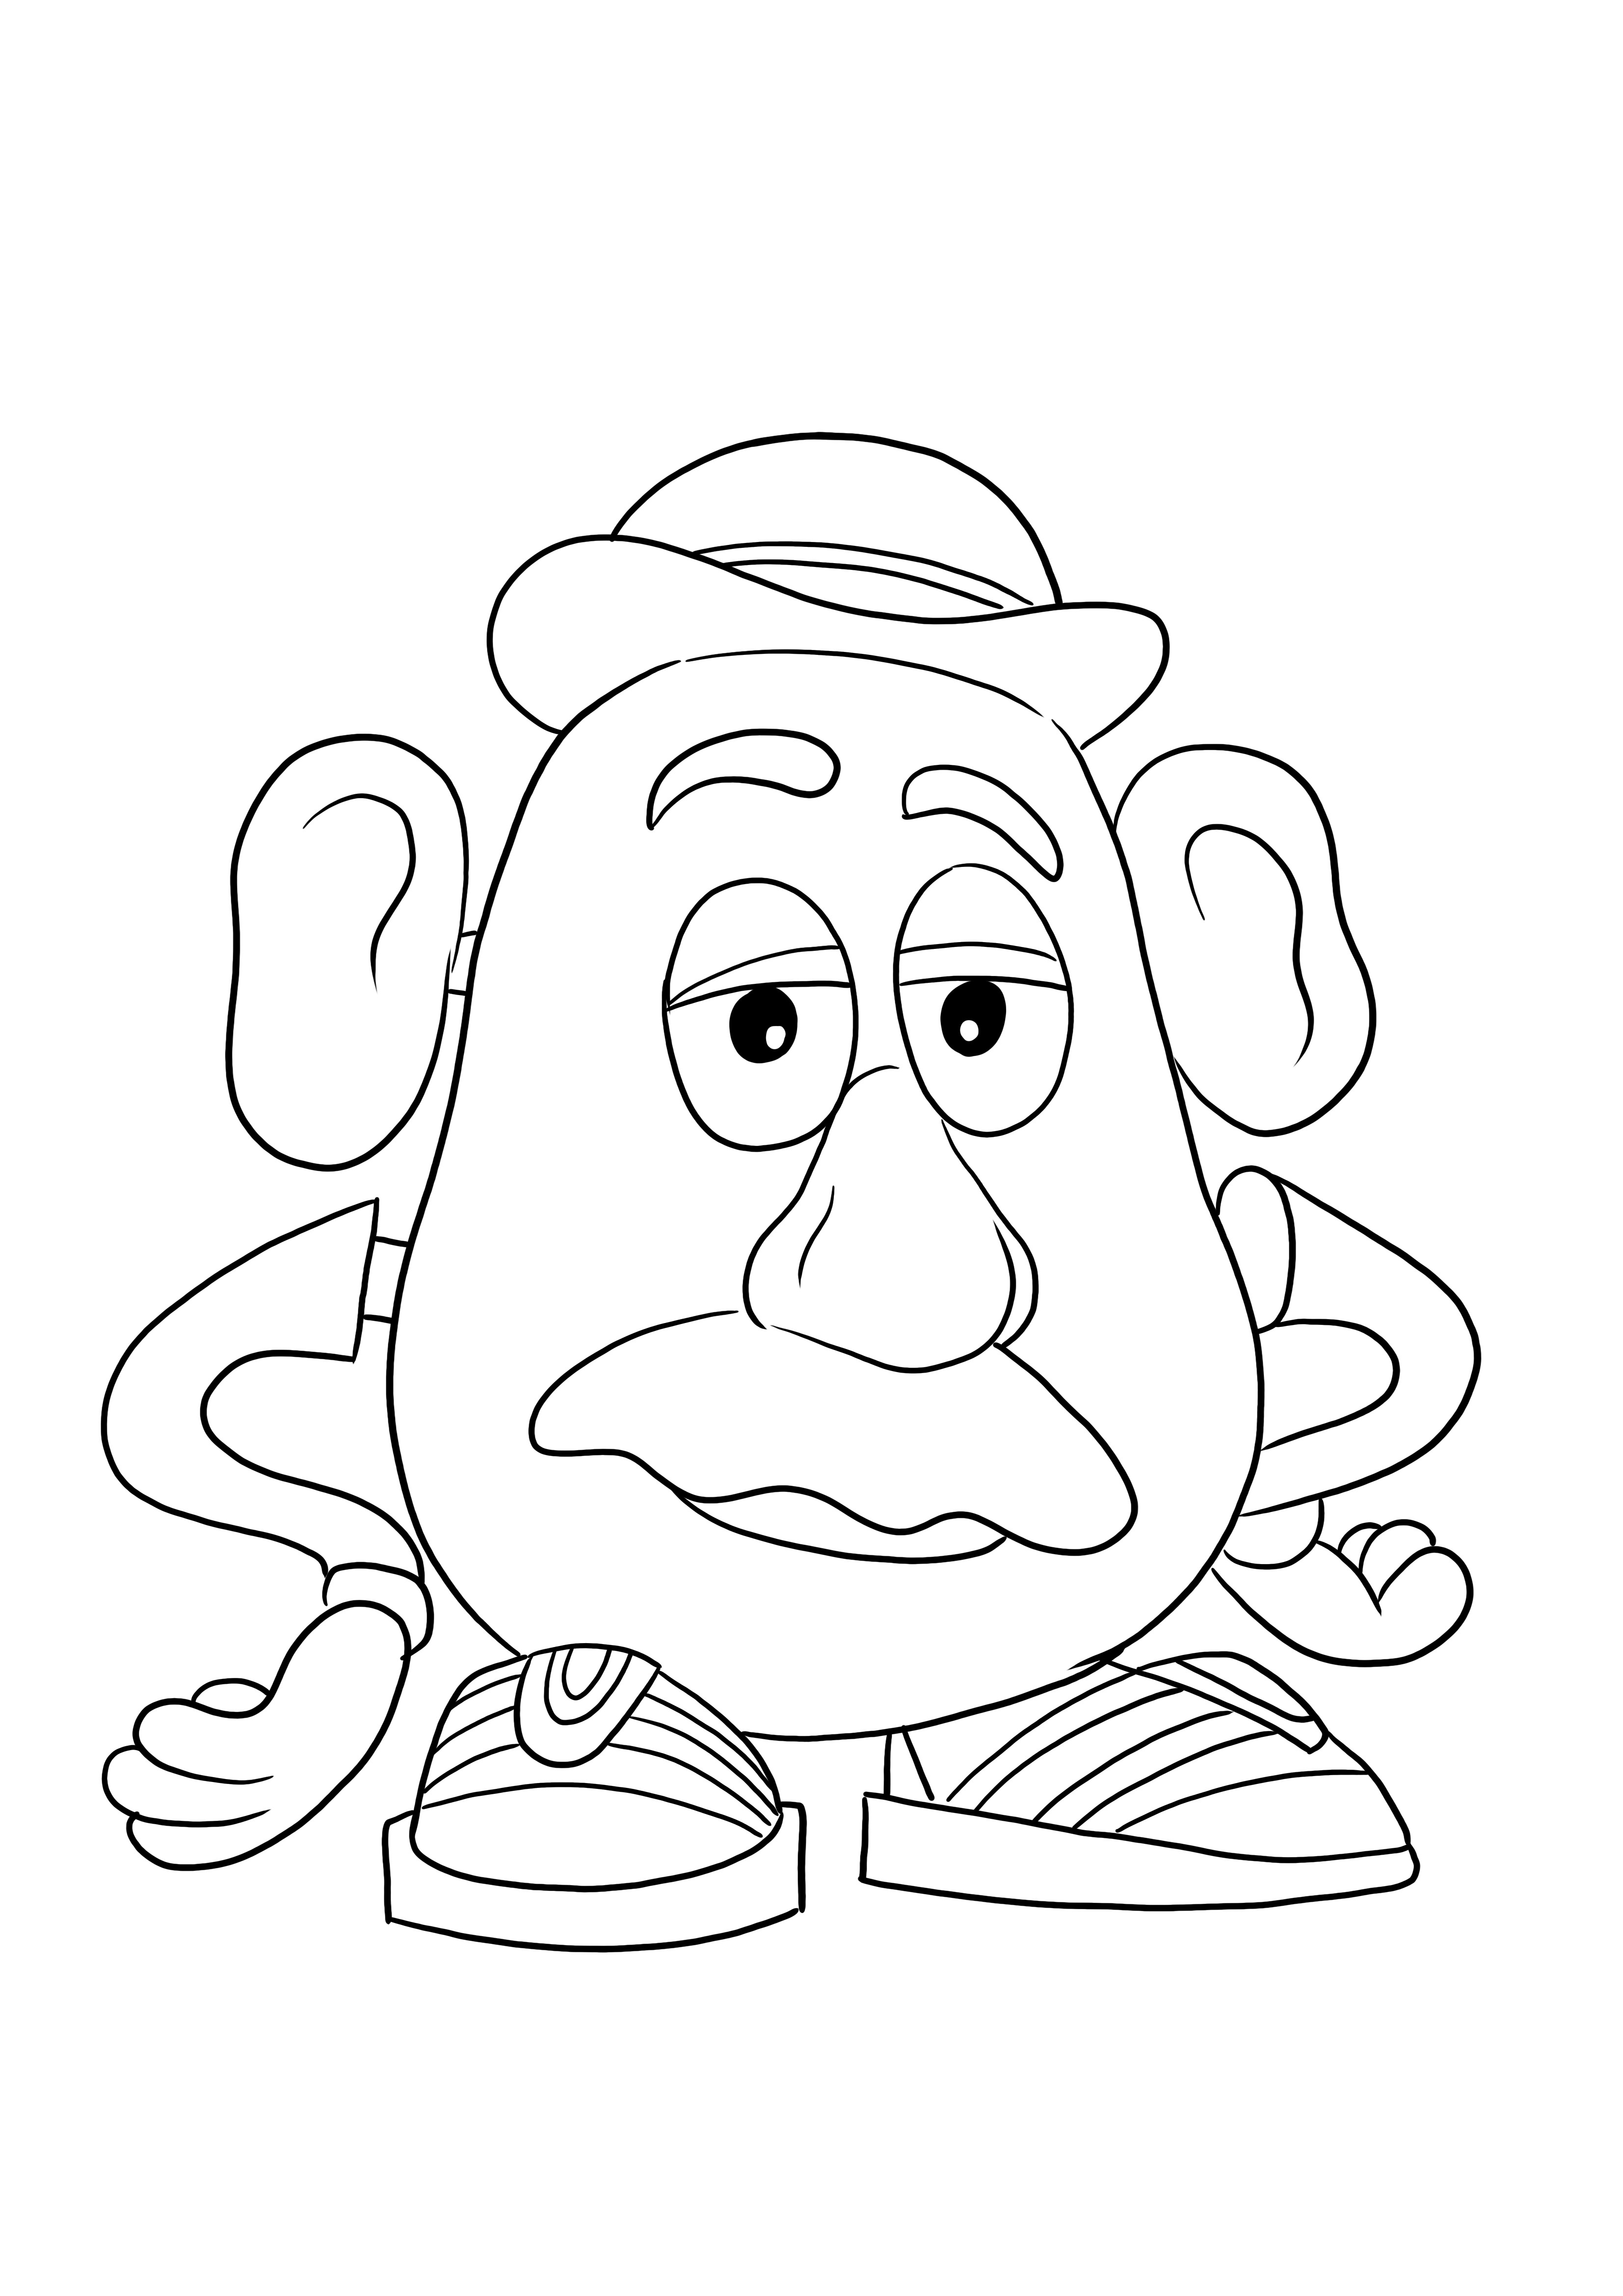 Imagen de descarga gratuita de Mister Potato Head para que los niños coloreen fácilmente